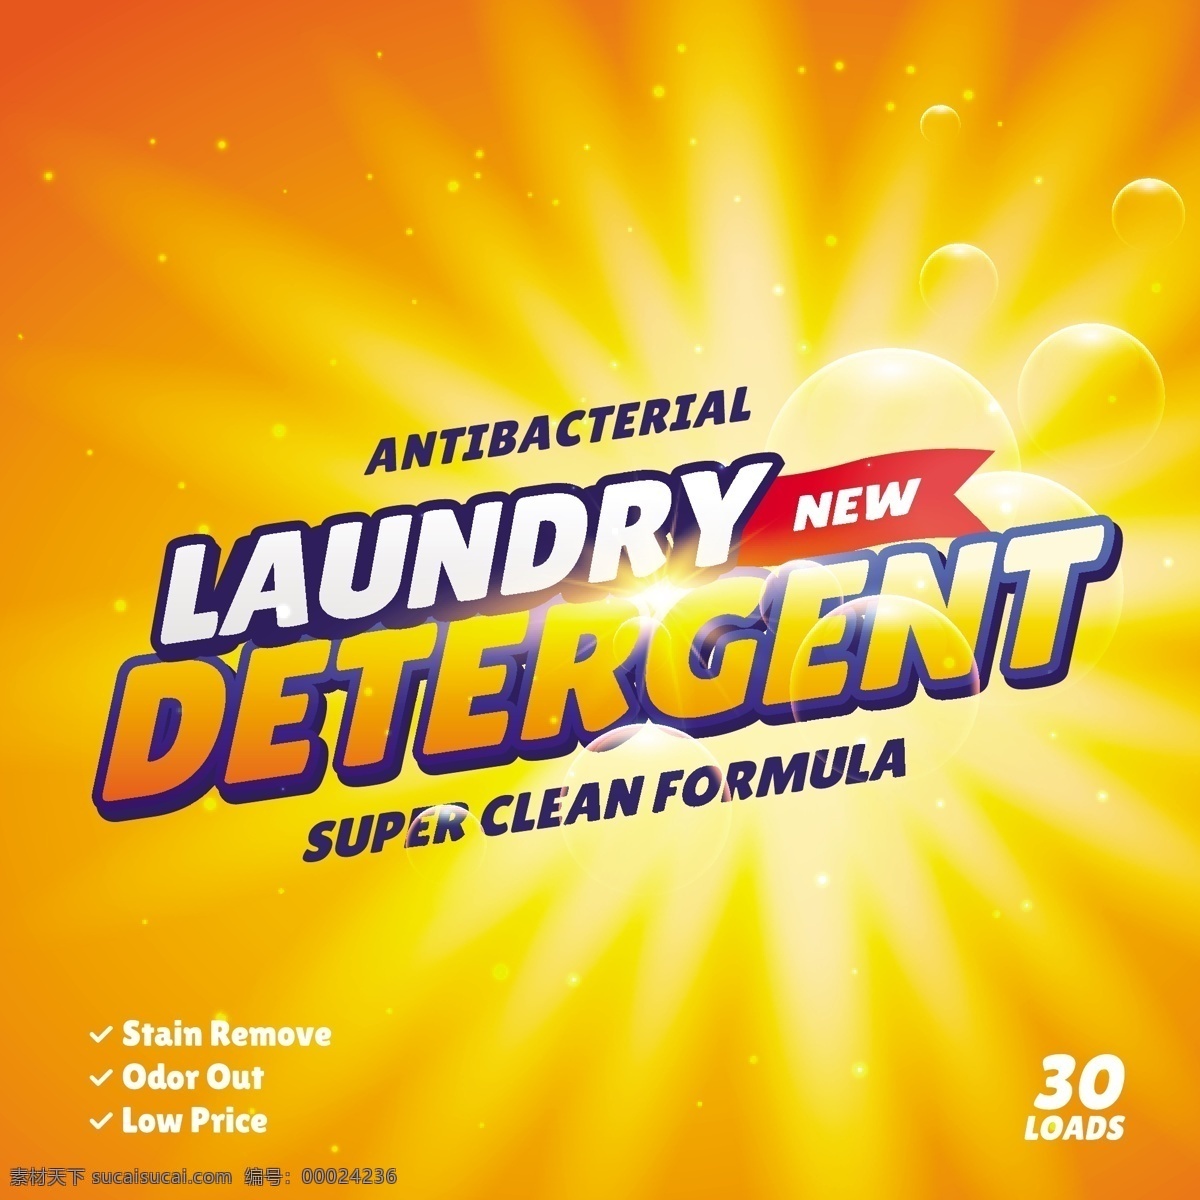 橙色 洗涤剂 包装 背景 抽象 水 模板 橙子 创意 卫生间 产品 清洁 浴室 洗衣房 品牌 布料 肥皂 洗衣粉 清洁剂 卫生 配方